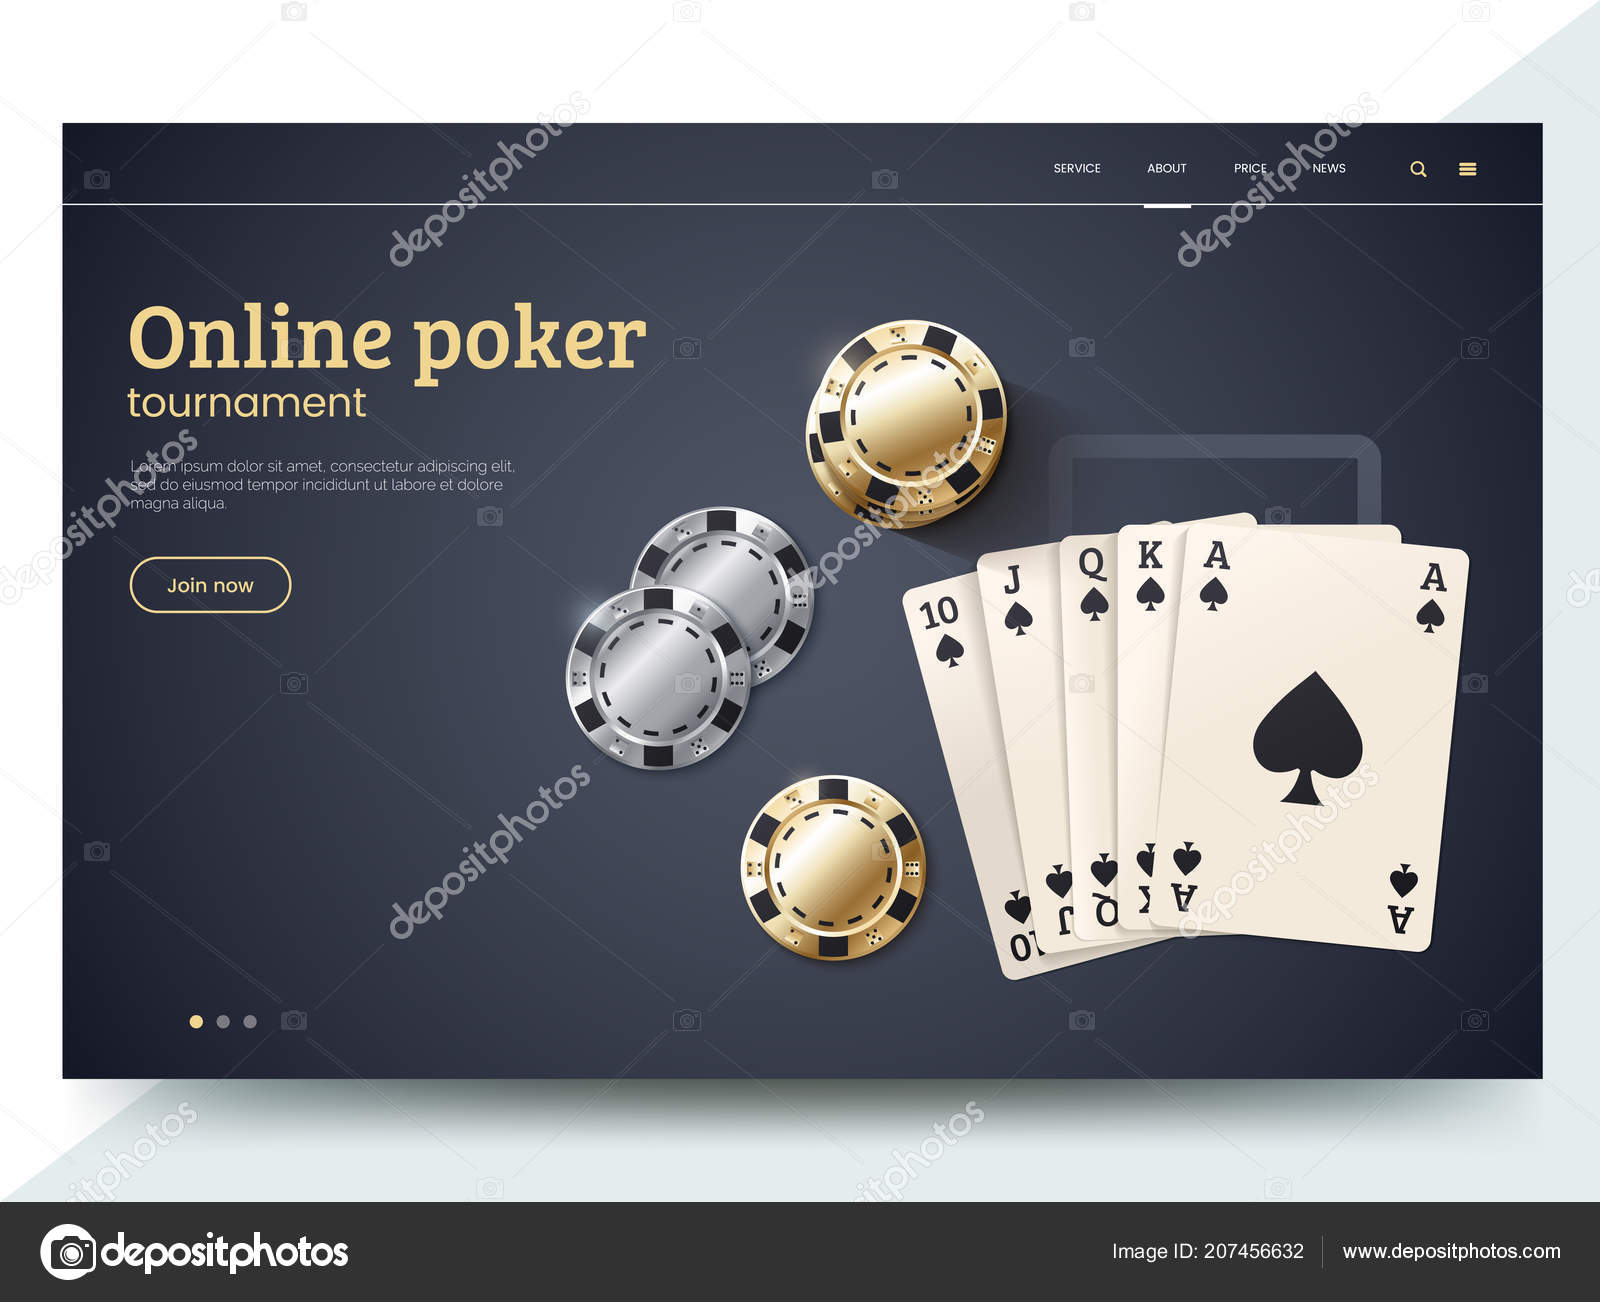 5 bewährte Online Casino Anbieter -Techniken